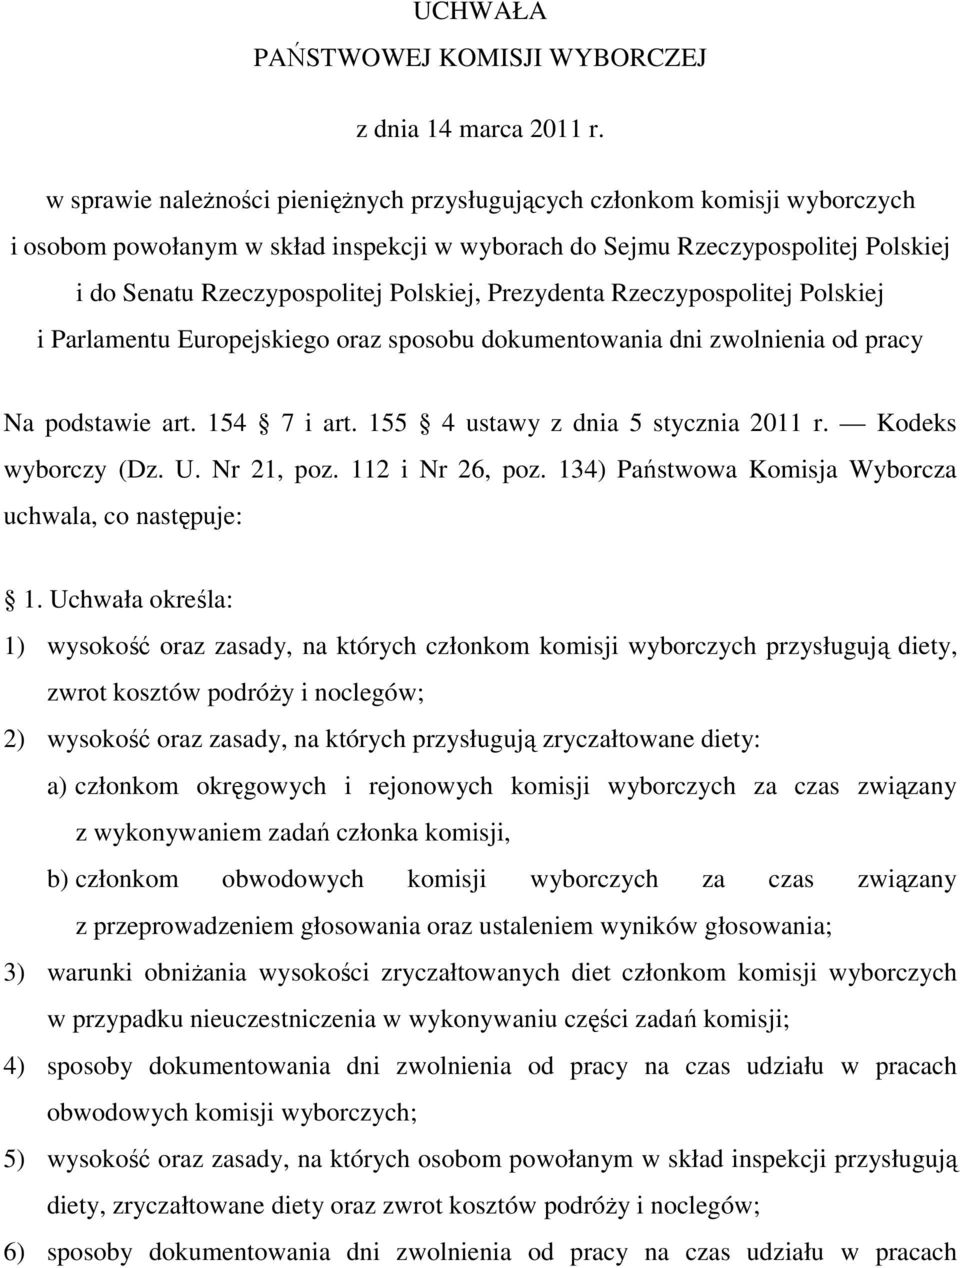 Prezydenta Rzeczypospolitej Polskiej i Parlamentu Europejskiego oraz sposobu dokumentowania dni zwolnienia od pracy Na podstawie art. 154 7 i art. 155 4 ustawy z dnia 5 stycznia 2011 r.